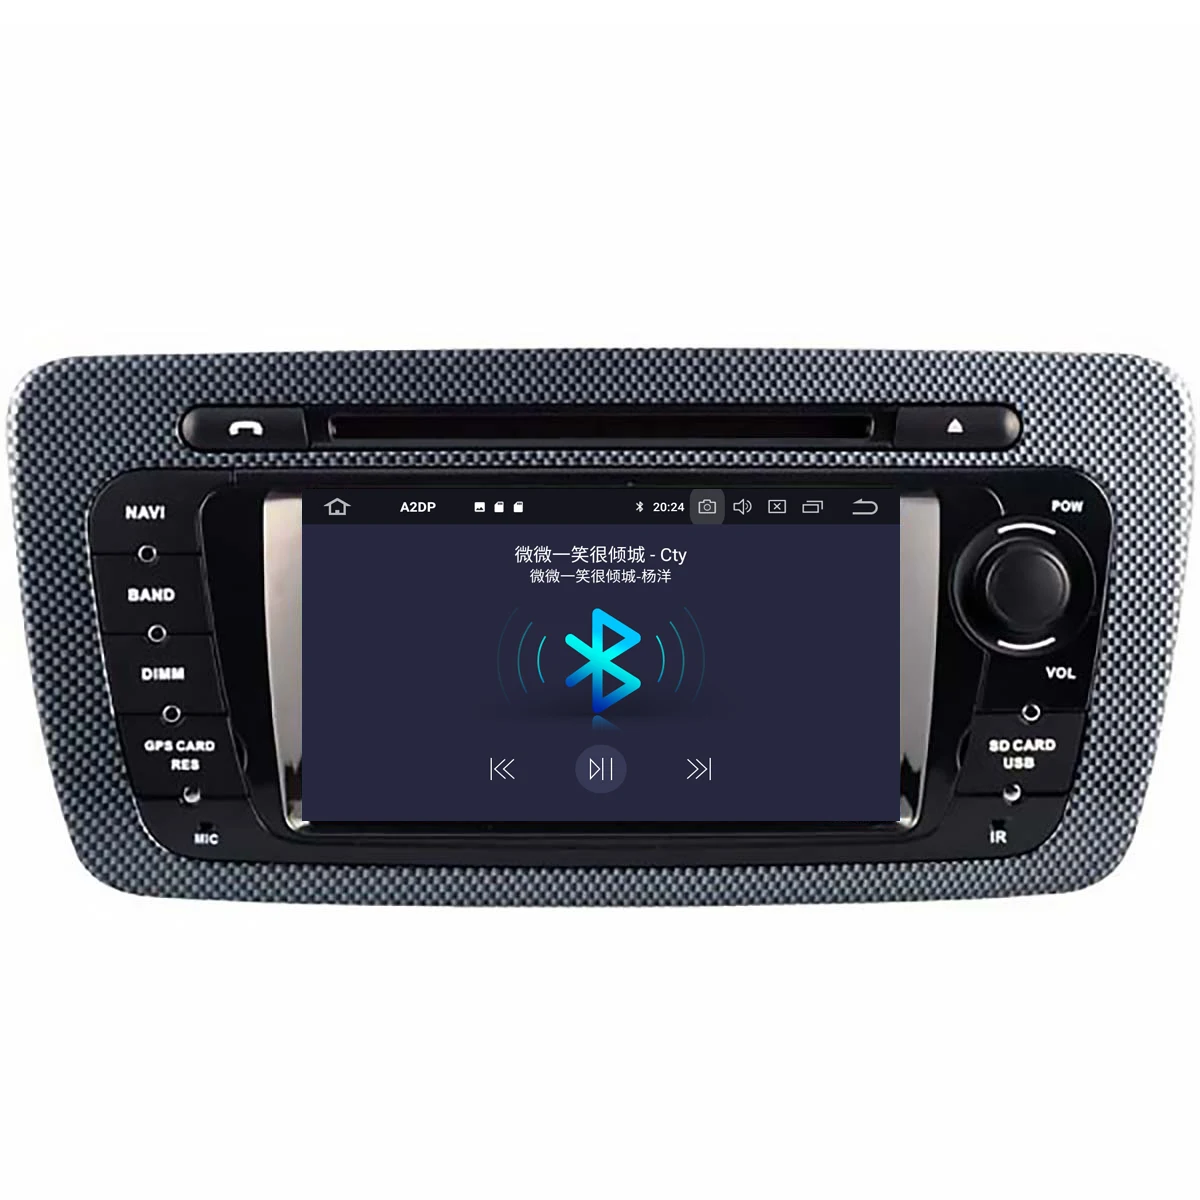 4G64G 6 core Android 9.0 Estéreo del Coche Inteligente Multimedia Reproductor de DVD de GPS para Seat Leon 2009-2013 de Audio de la radio grabadora jefe de la unidad de 2